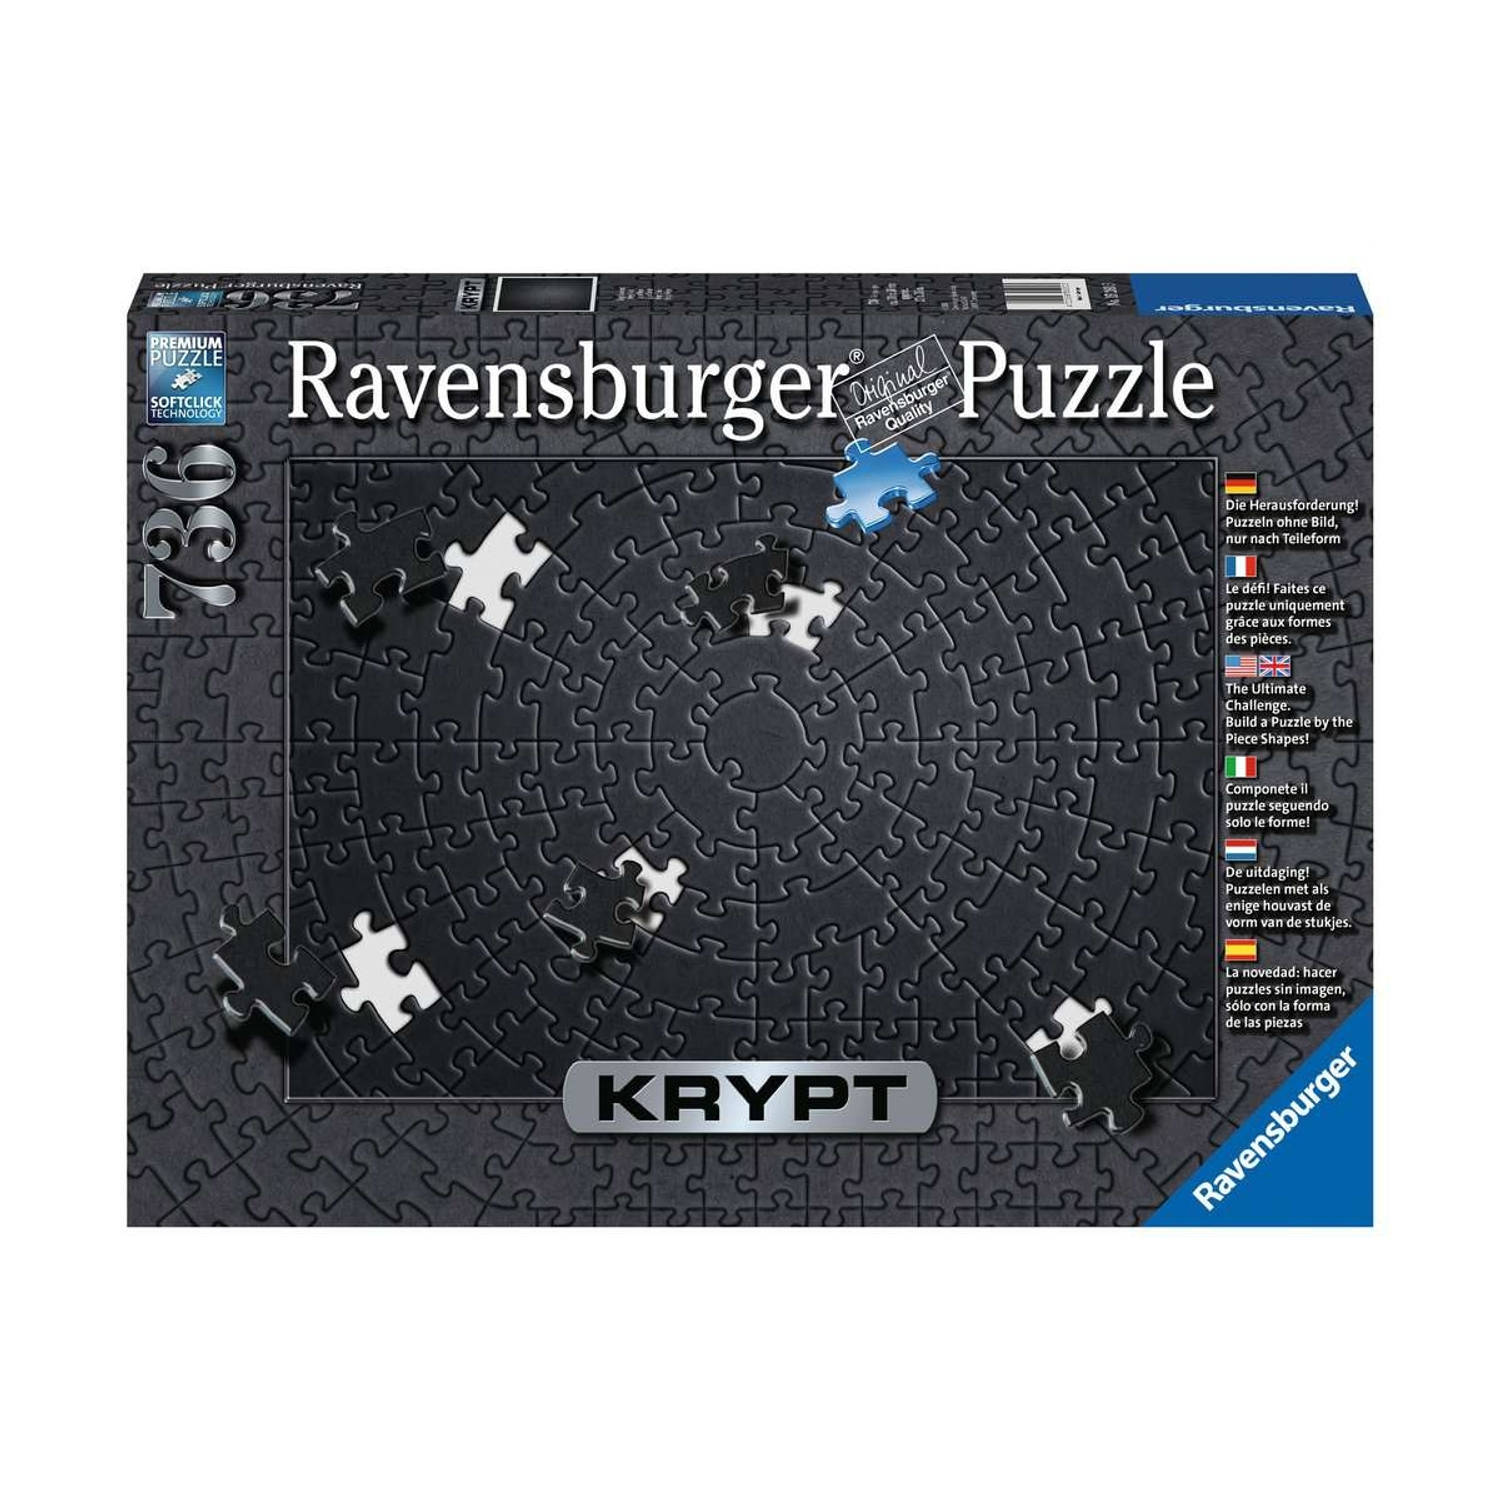 Ravensburger puzzel Krypt black